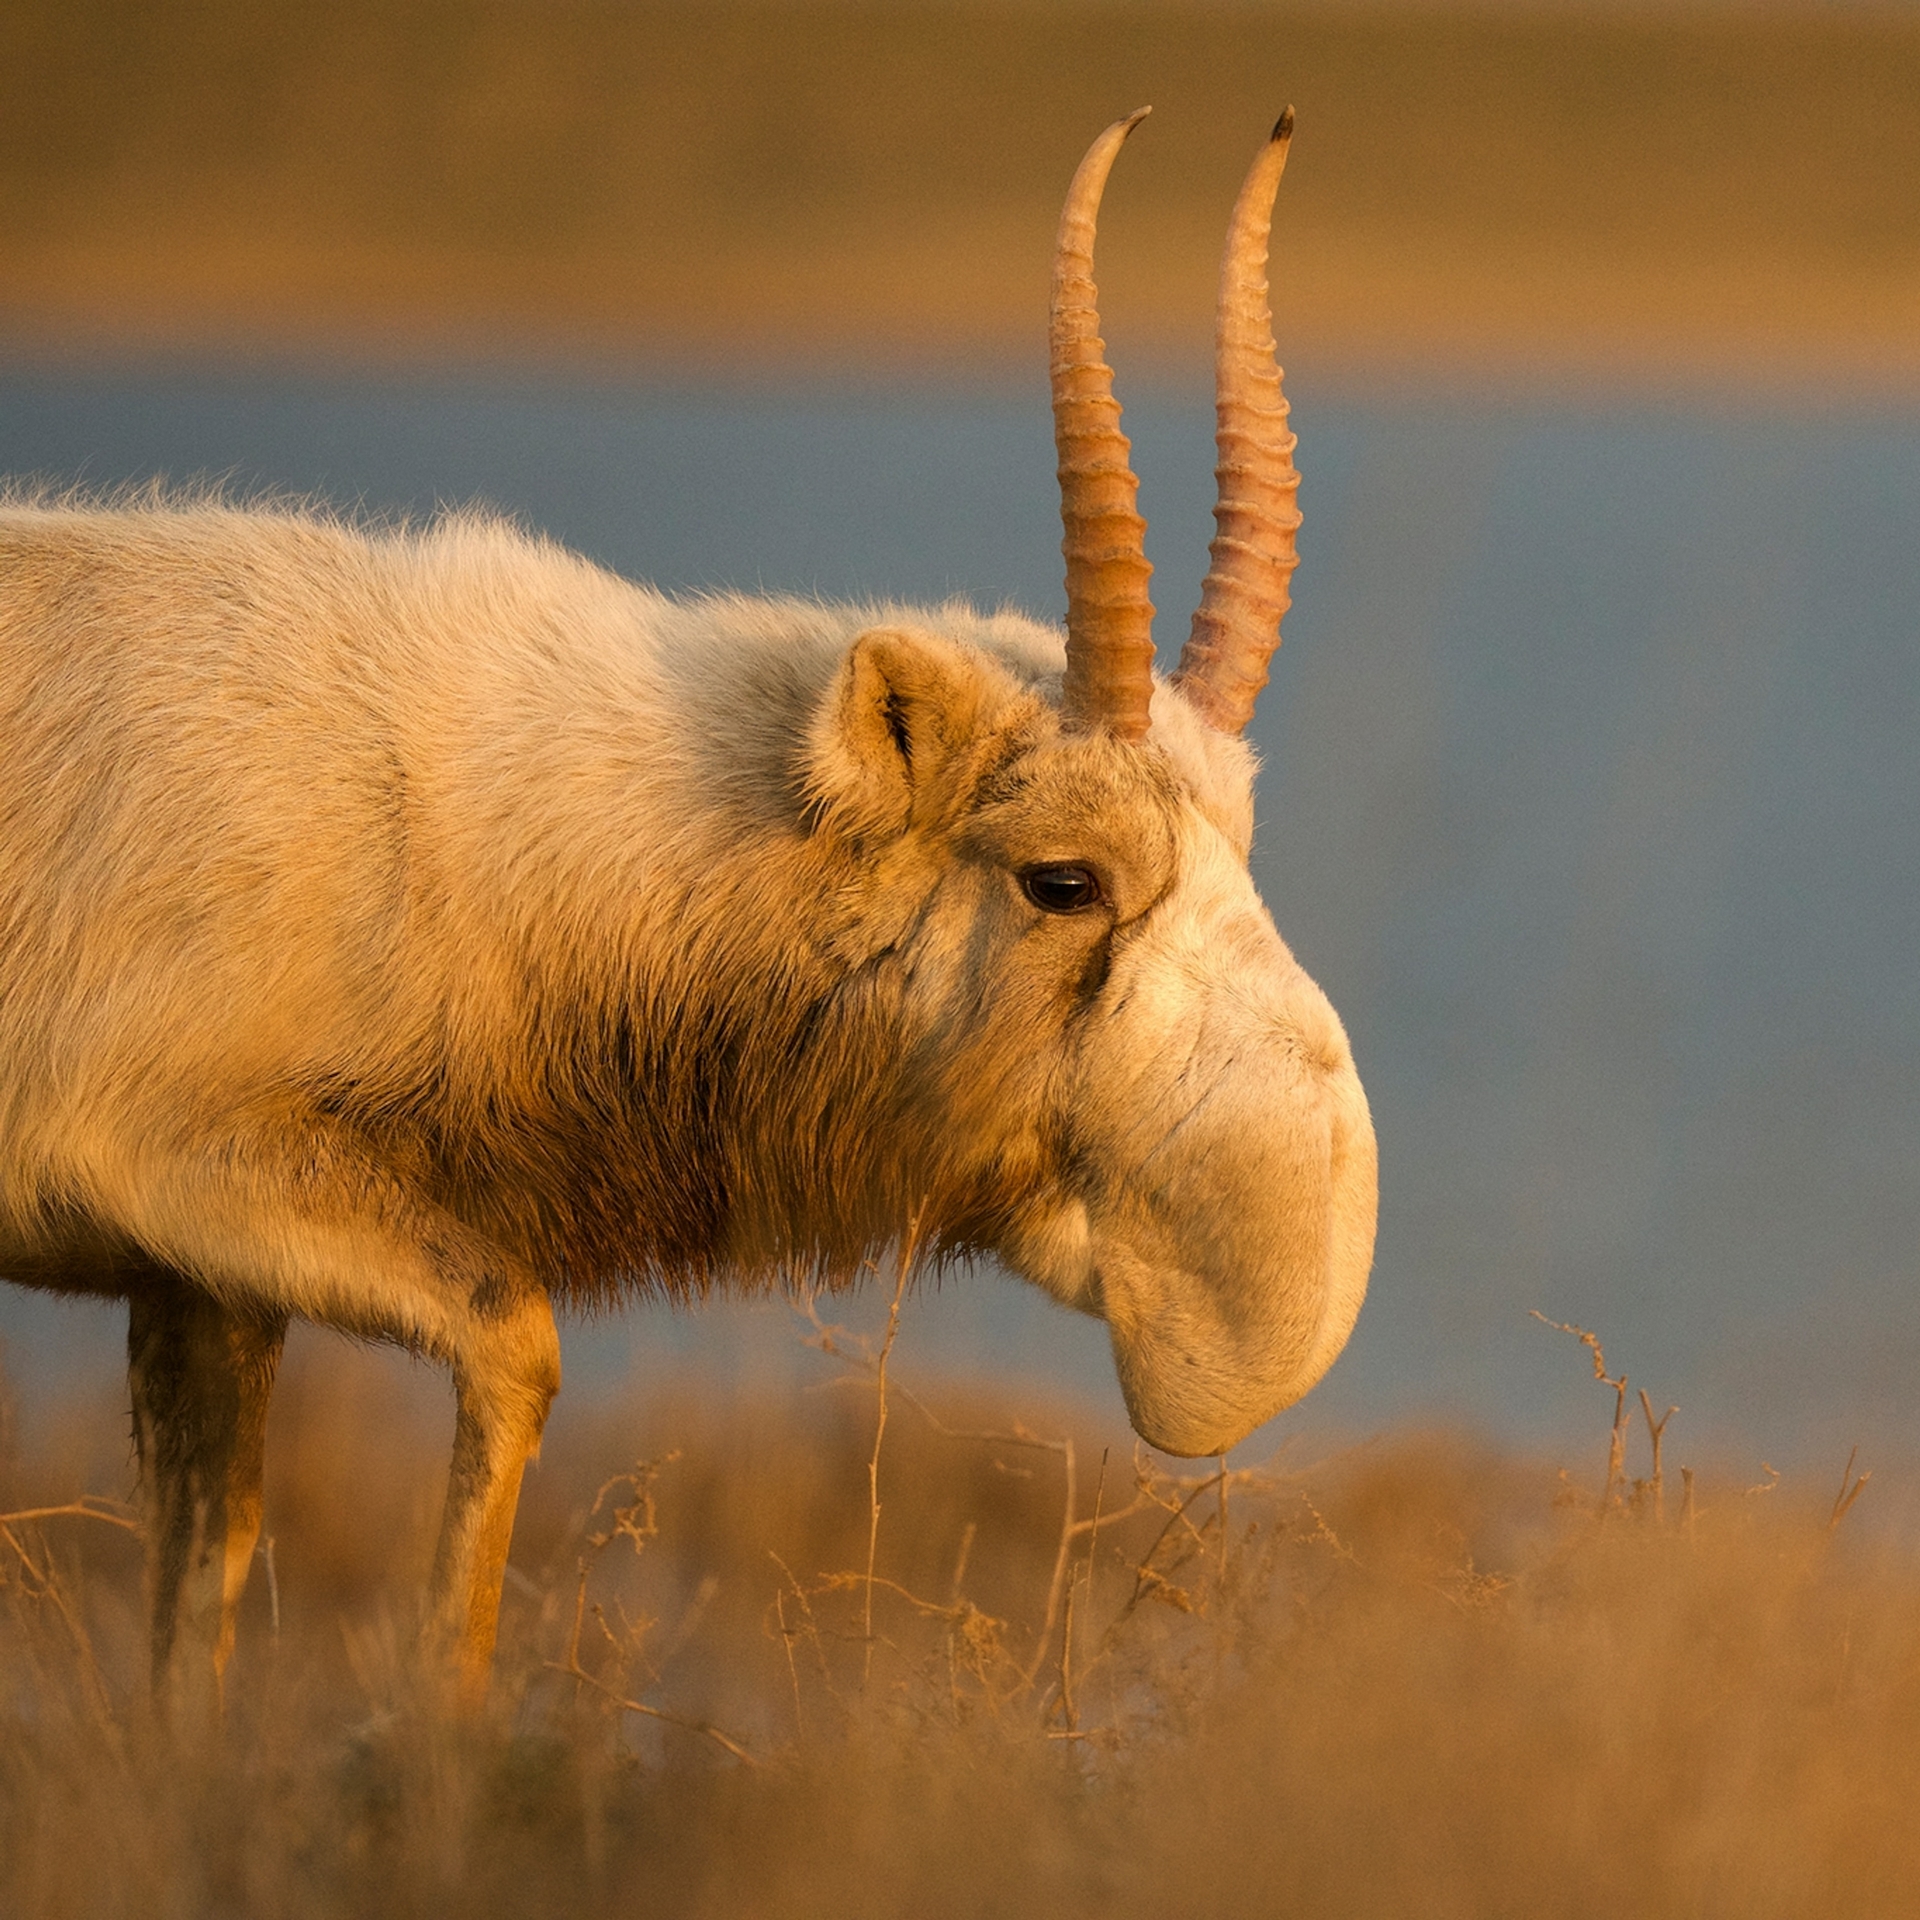 俄國黑地國家公園的一隻雄性高鼻羚羊。這些高度社會性的羚羊是群居生活。PHOTOGRAPH BY VALERIY MALEEV/ NATURE PICTURE LIBRARY